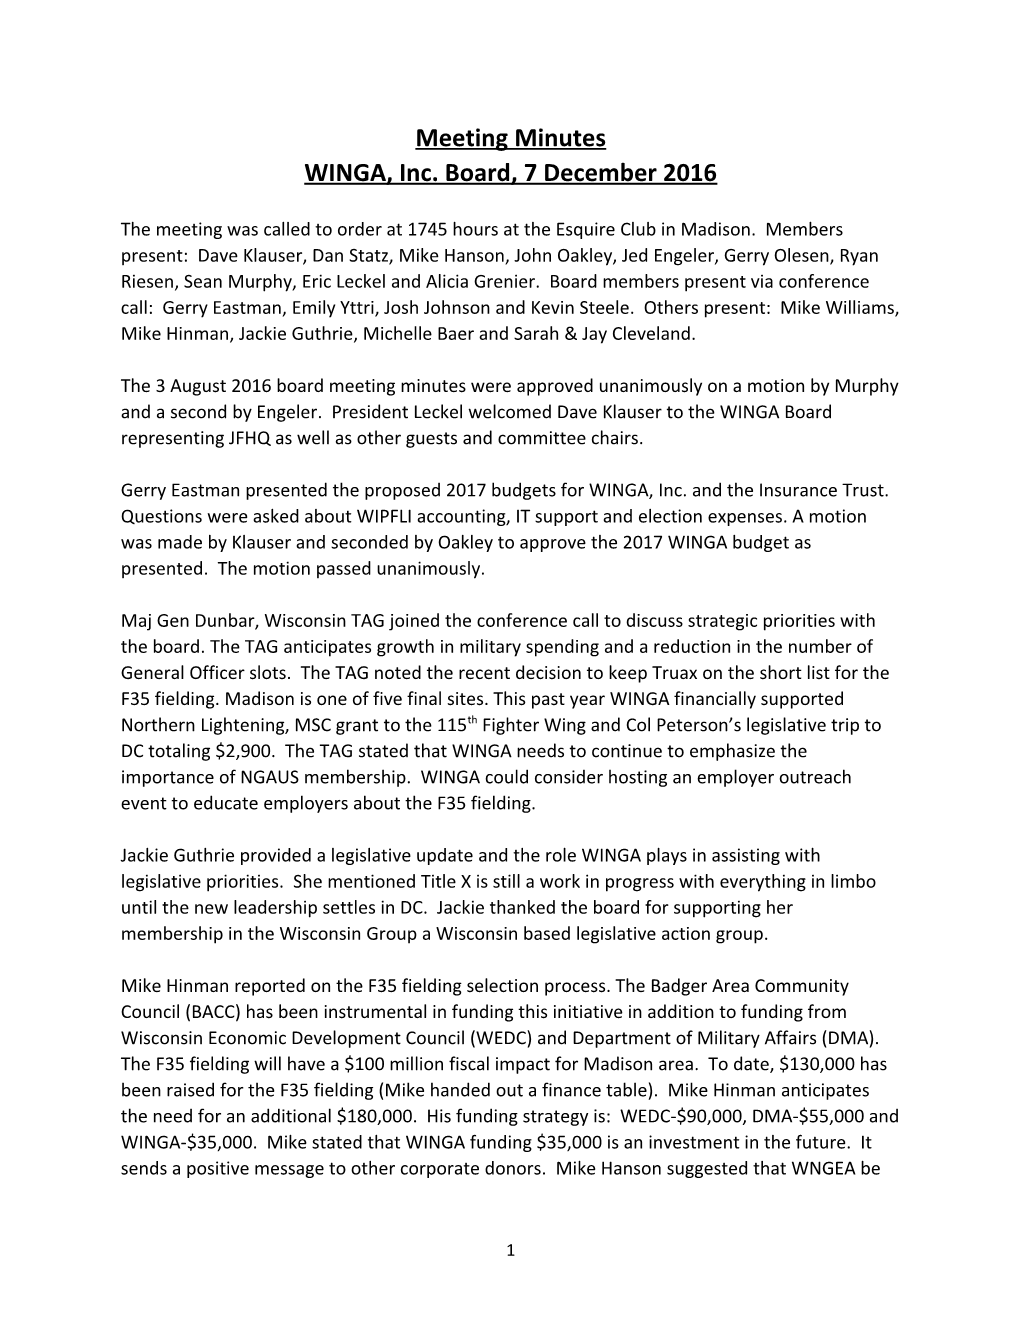 WINGA, Inc. Board, 7 December 2016